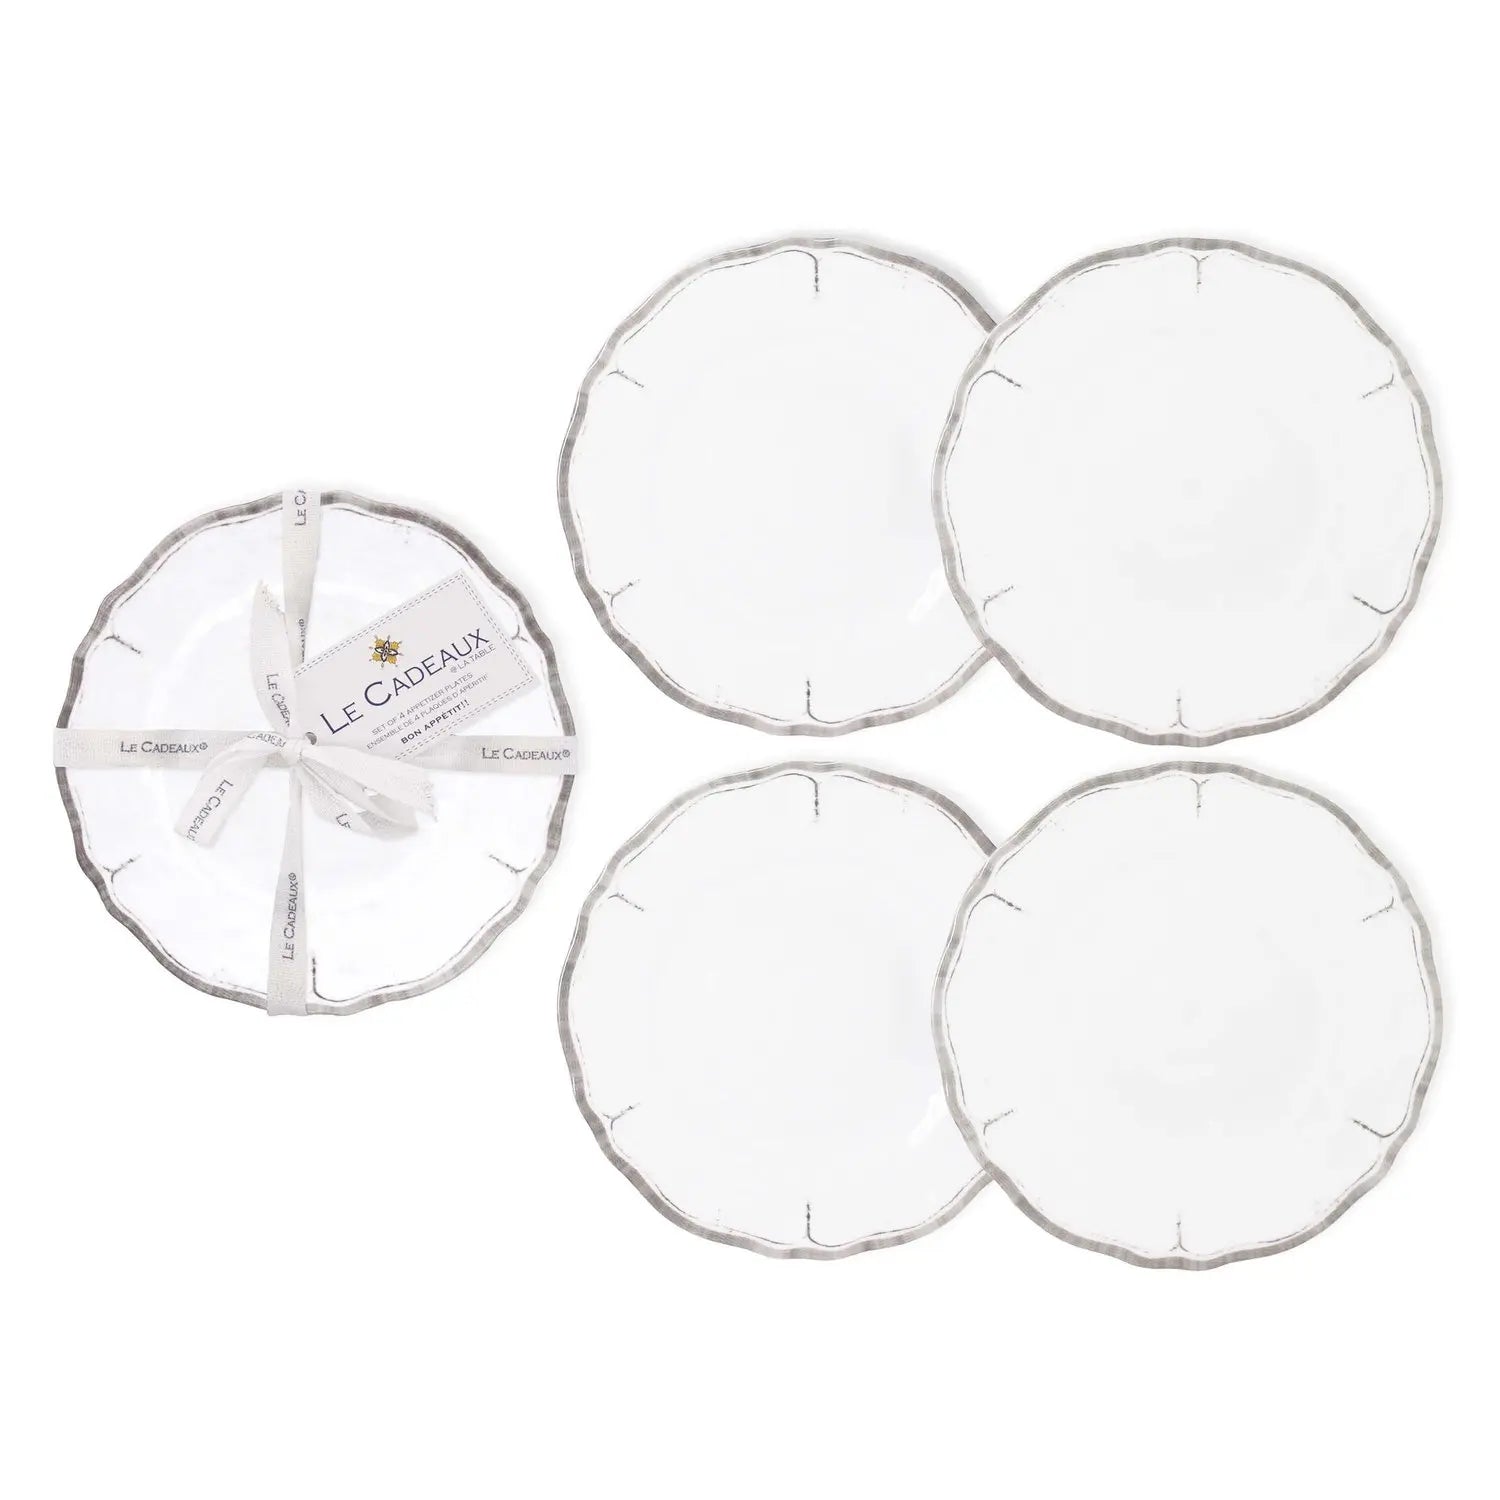 Le Cadeaux Rustica Antique White Appetizer Plates- Set of 4